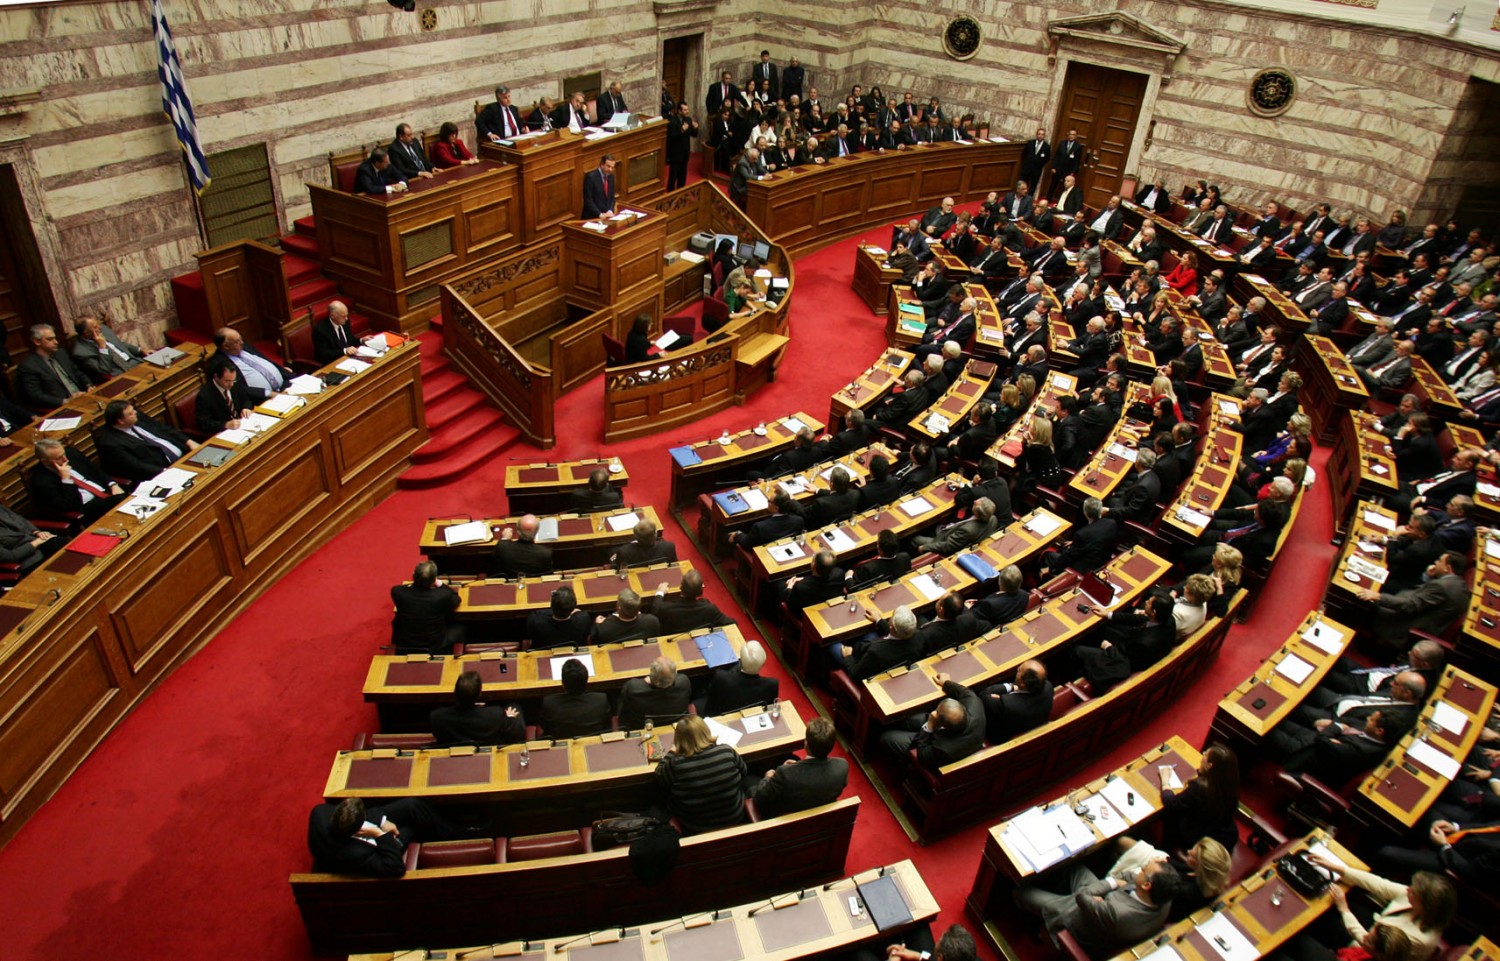 Ξεκινάει η συνταγματική αναθεώρηση στην Βουλή: 149 οι προτεινόμενες τροποποιήσεις – Ποια είναι η διαδικασία